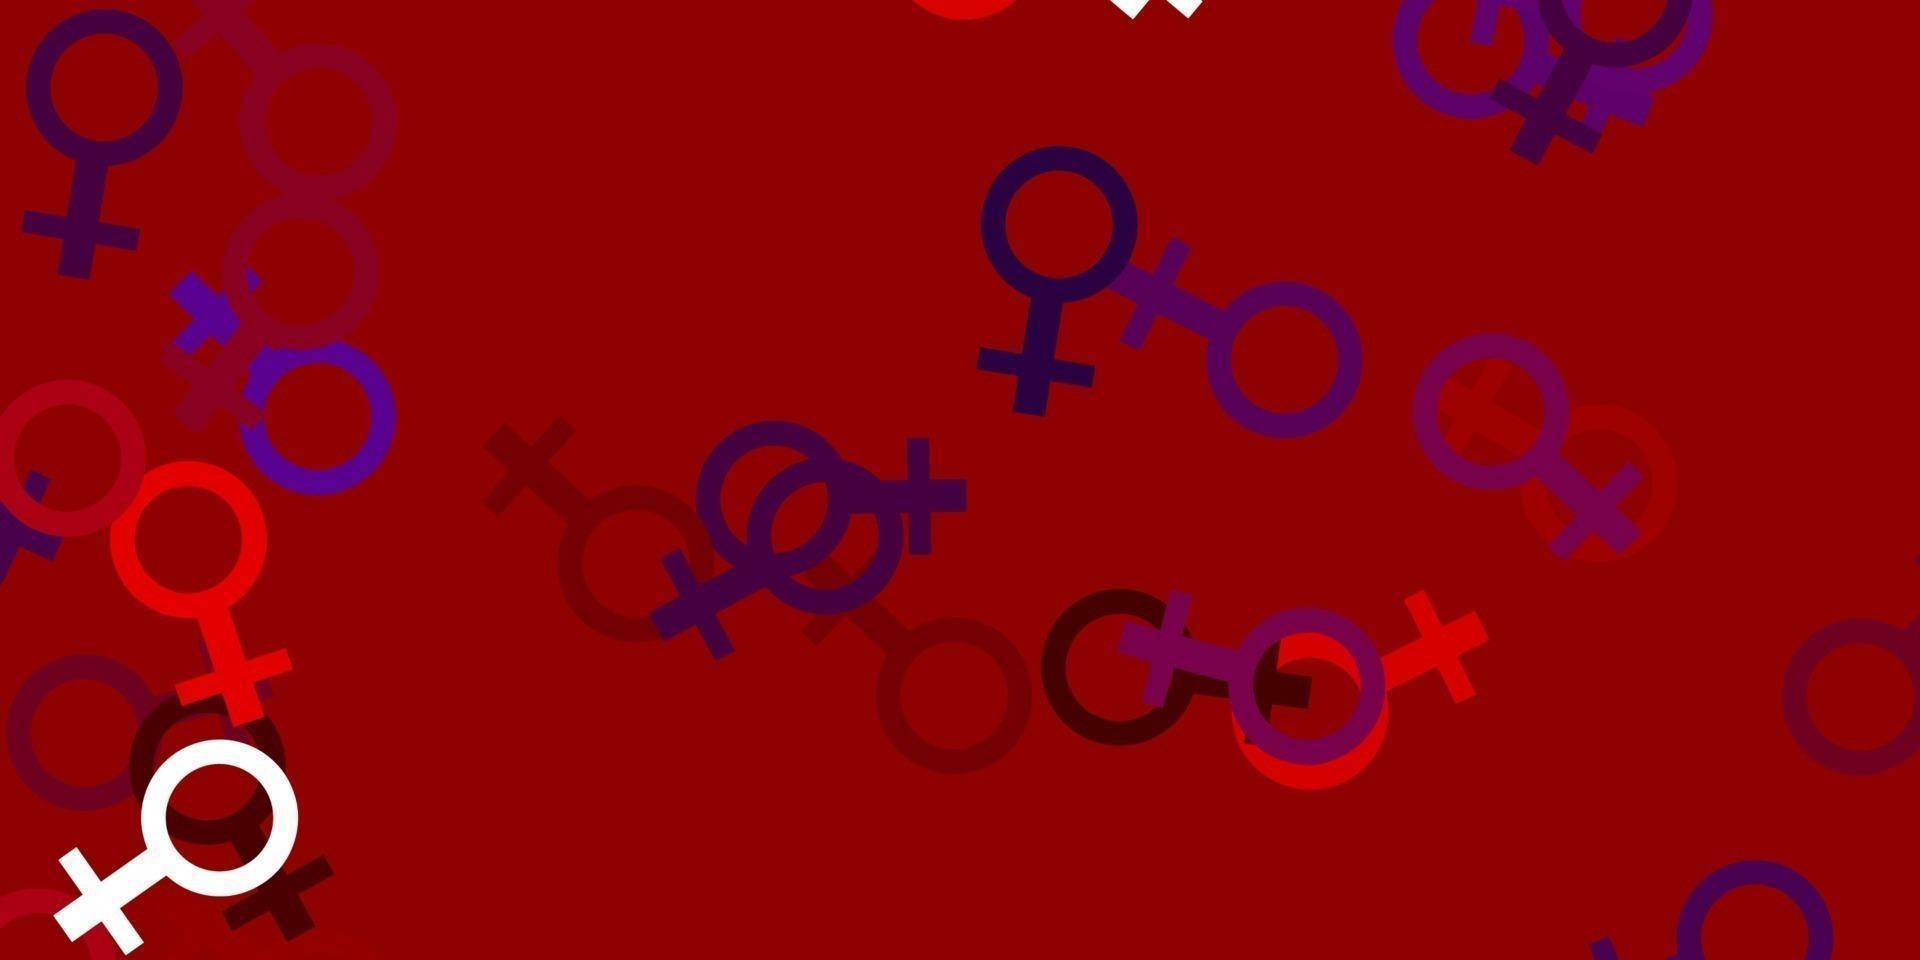 textura vector azul, vermelho claro com símbolos dos direitos das mulheres.